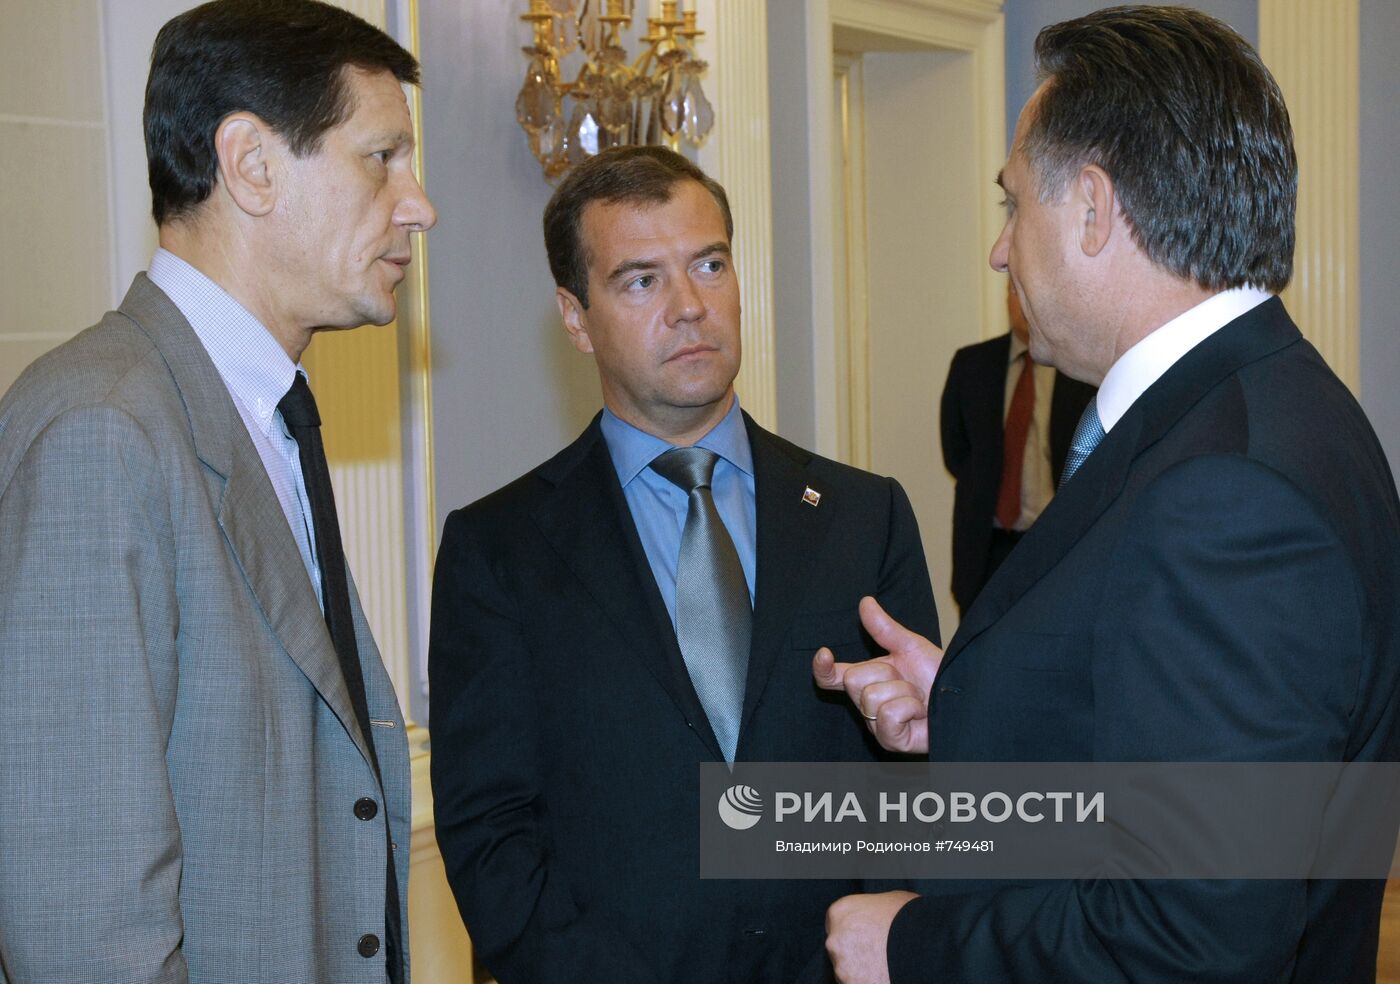 Встреча Дмитрия Медведева с российской юношеской сборной